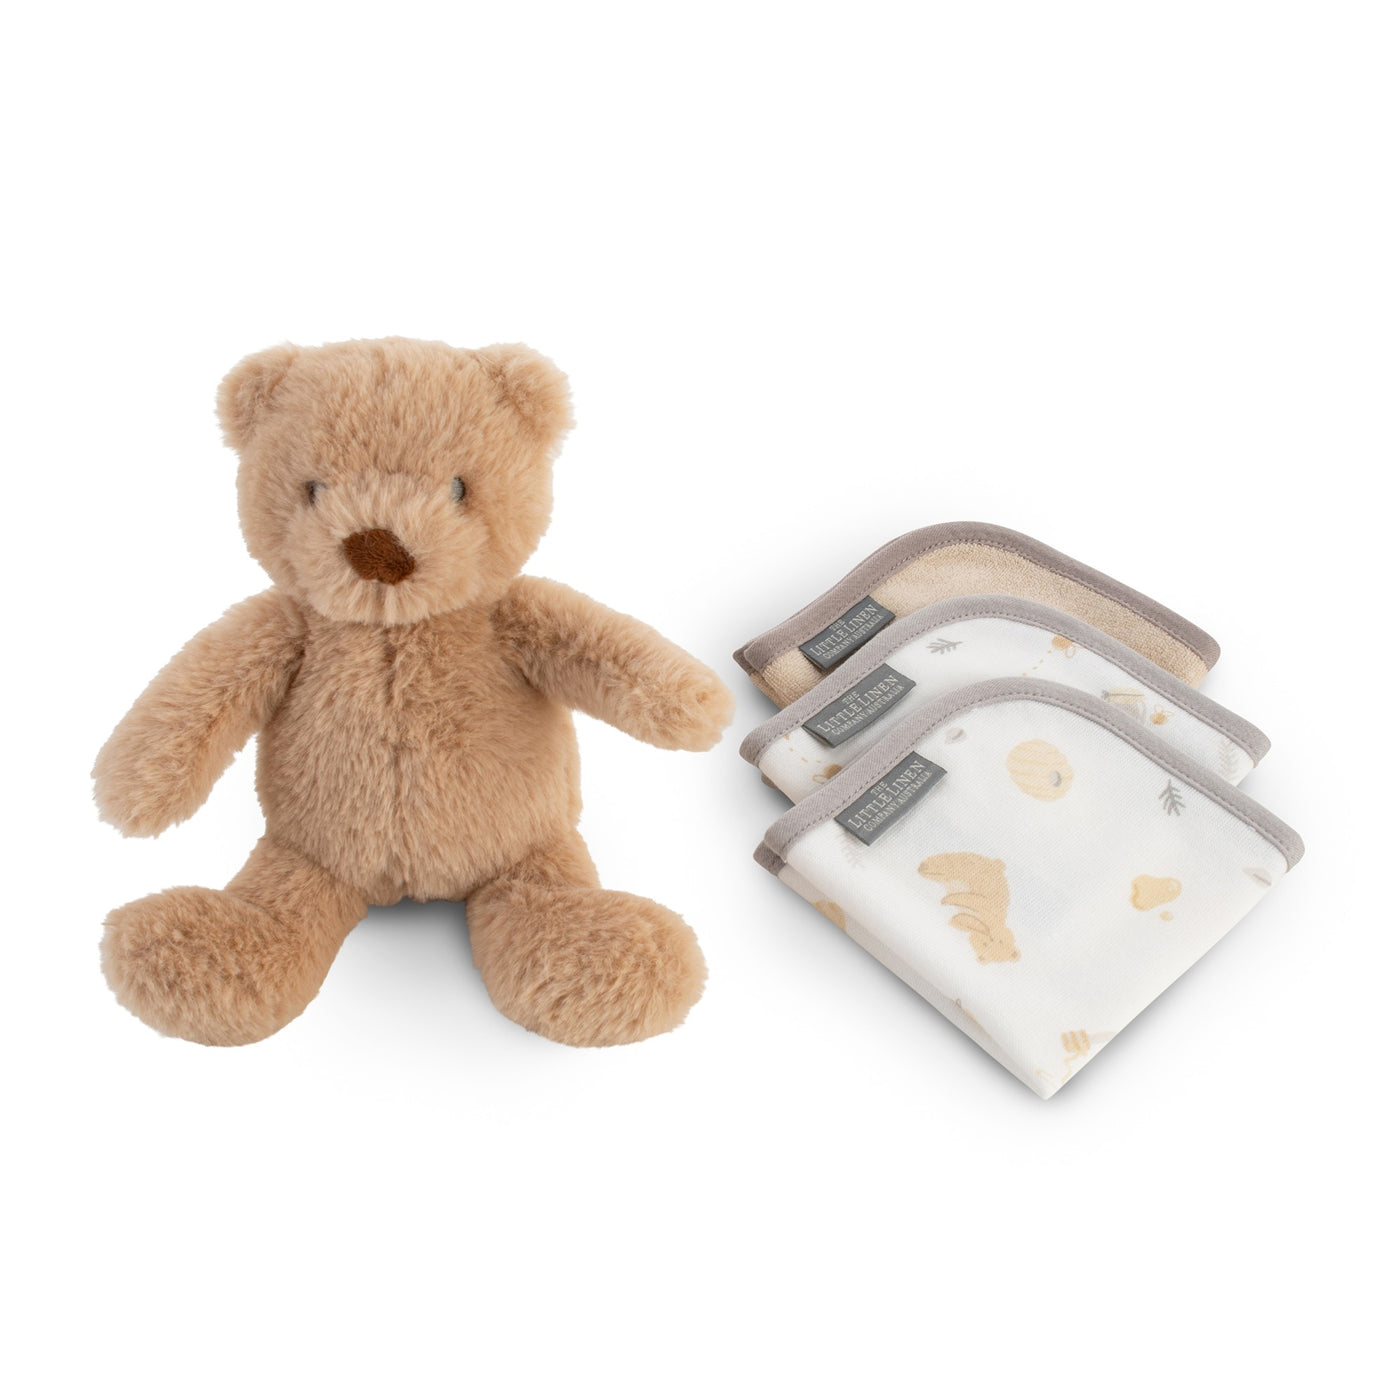 Plush Toy & Washers - Nectar Bear